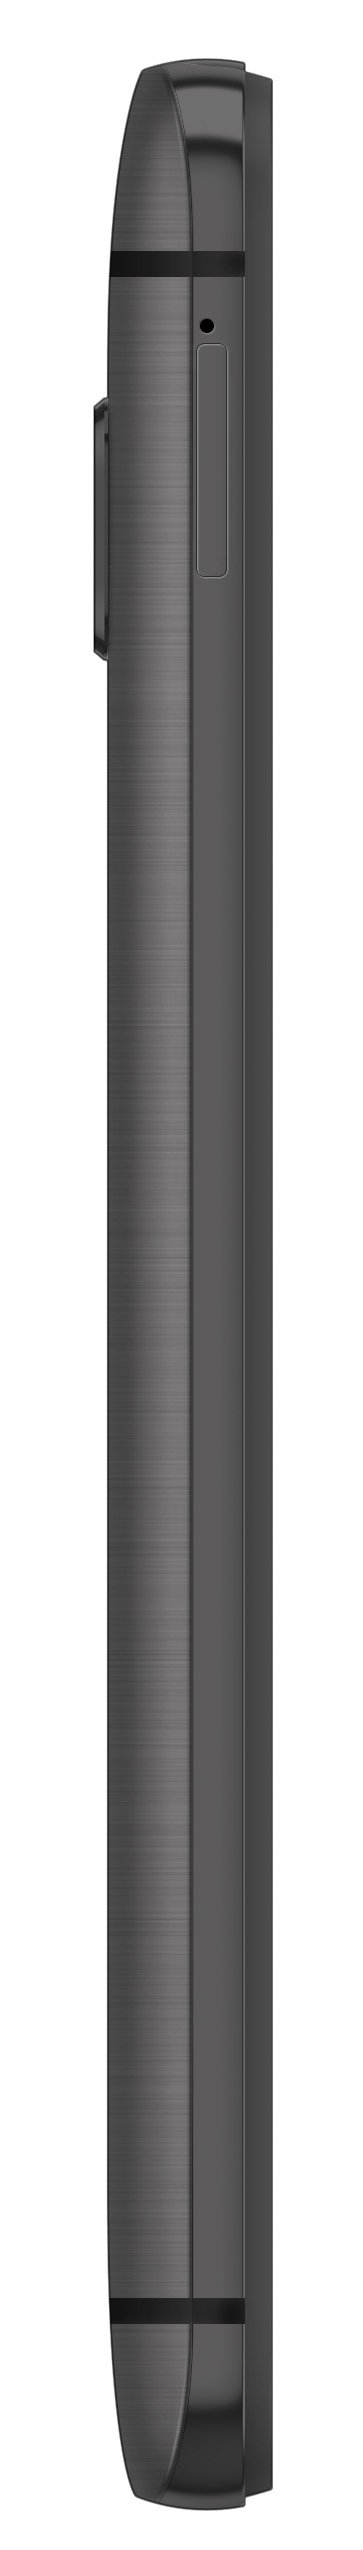 HTC One M9, Gunmetal Grey 32GB (Verizon Wireless)